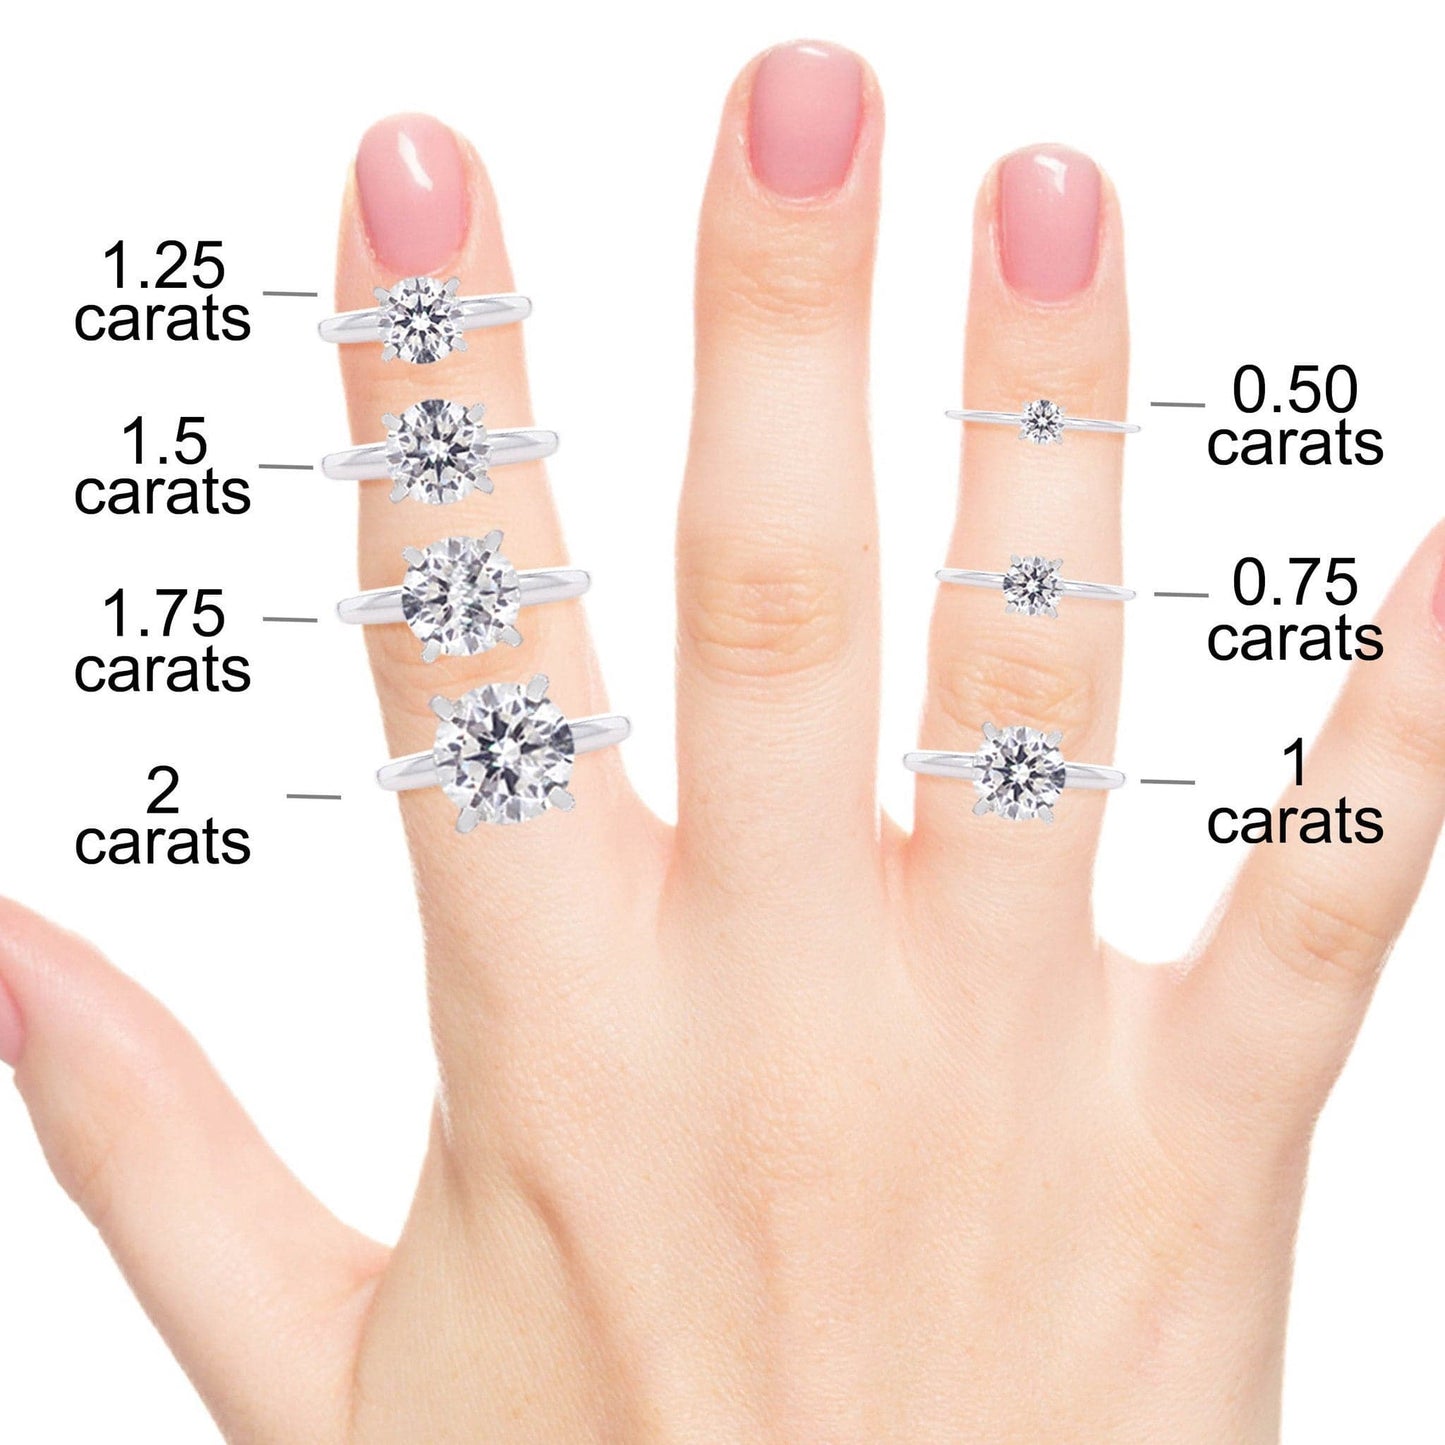 Halo Diamond Engagement Ring Mallory 14K Yellow Gold engagement rings imaginediamonds 